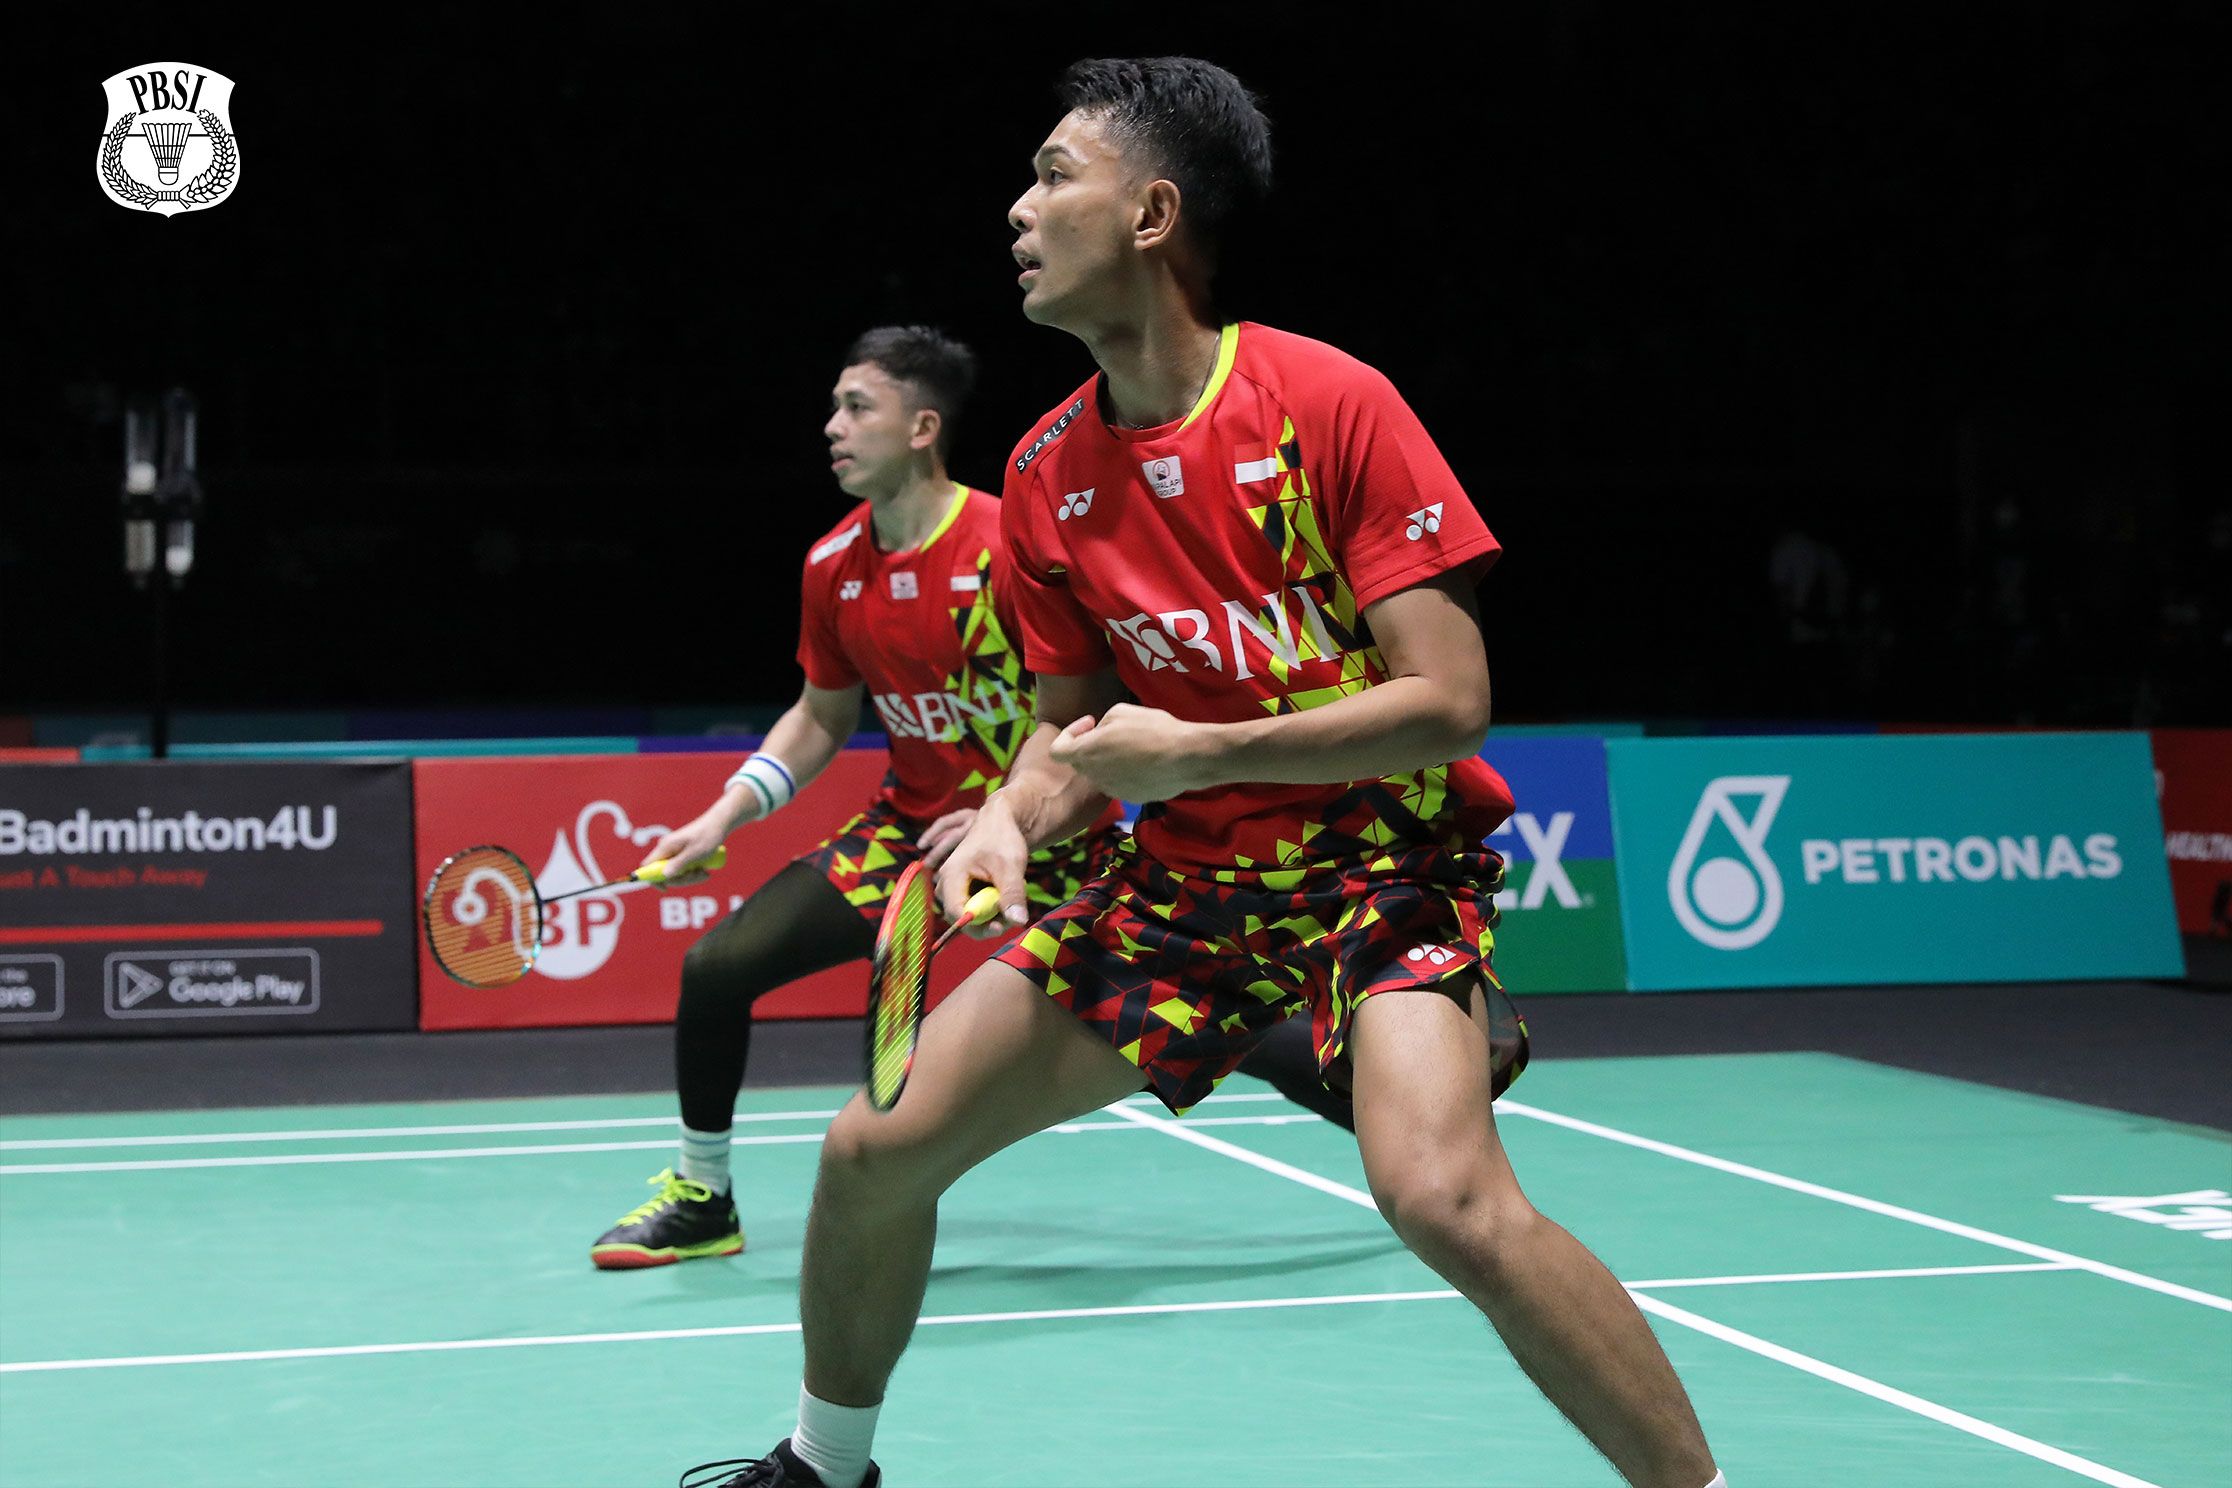 Rekap Hasil Final Malaysia Masters 2022: Chico Aura Dwi Wardoyo dan Fajar Alfian-Rian Ardianto Juara